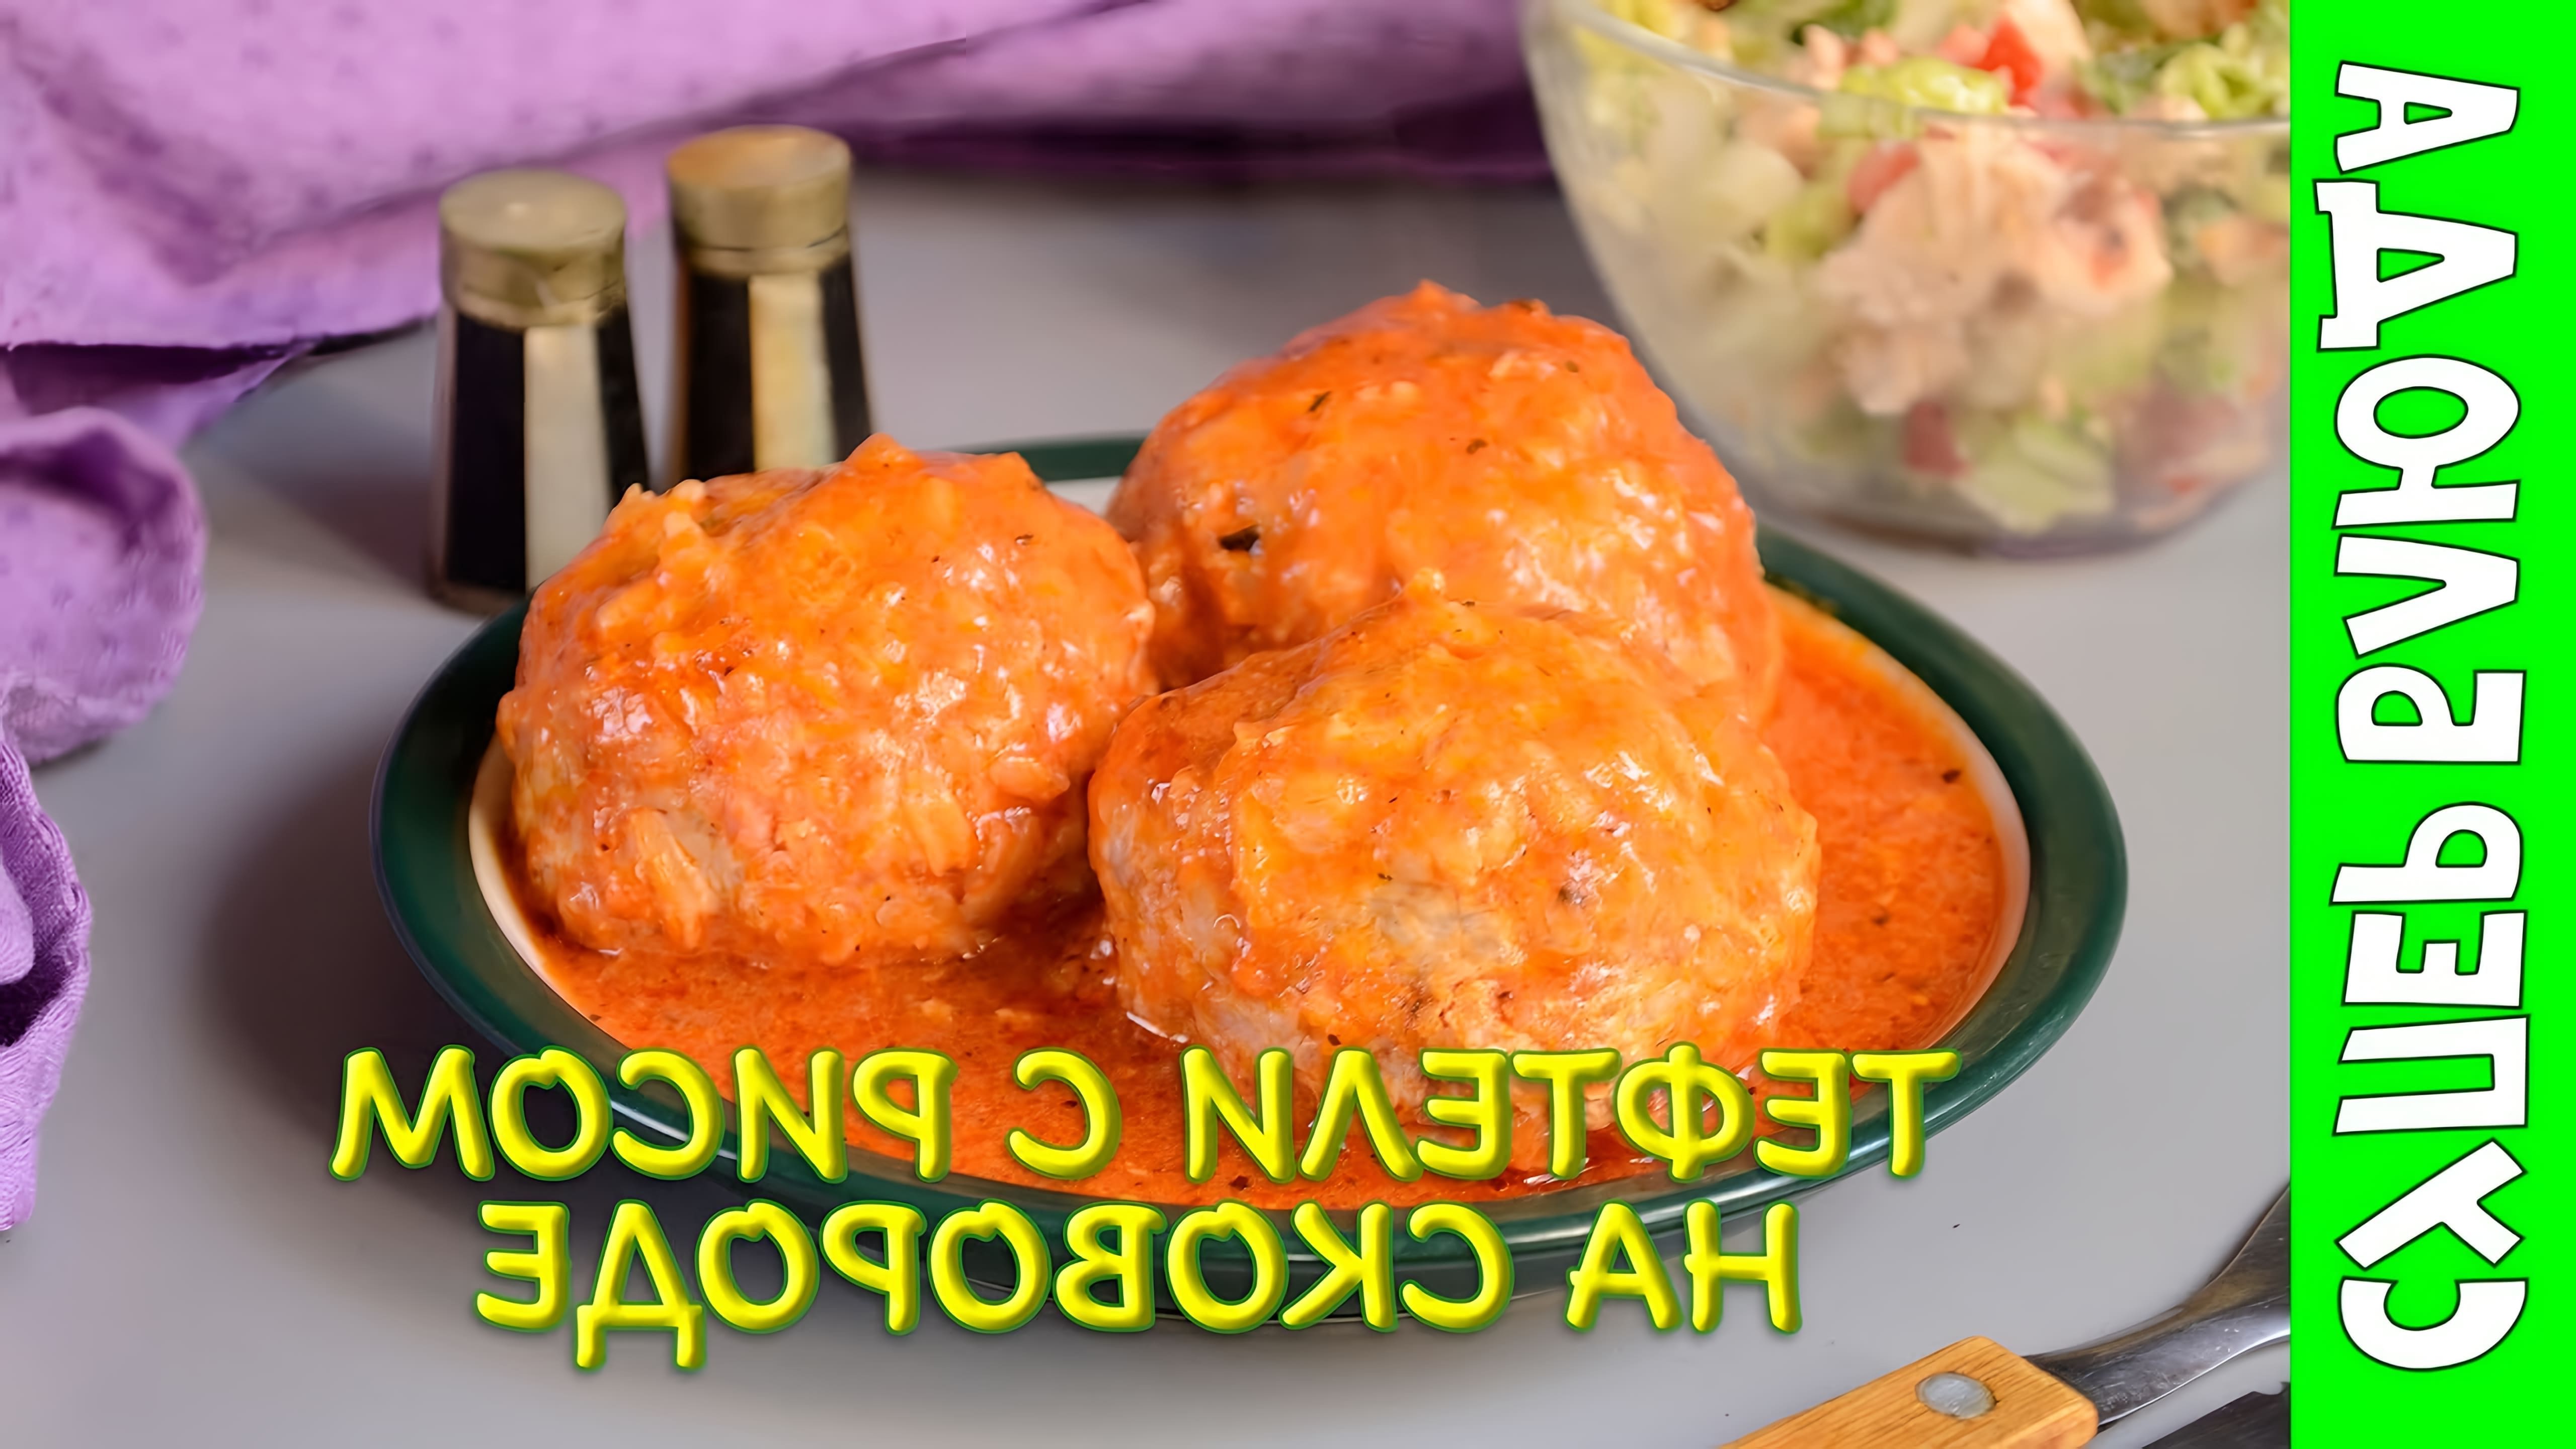 В этом видео-ролике будет показан рецепт приготовления тефтелей с рисом в томатном соусе